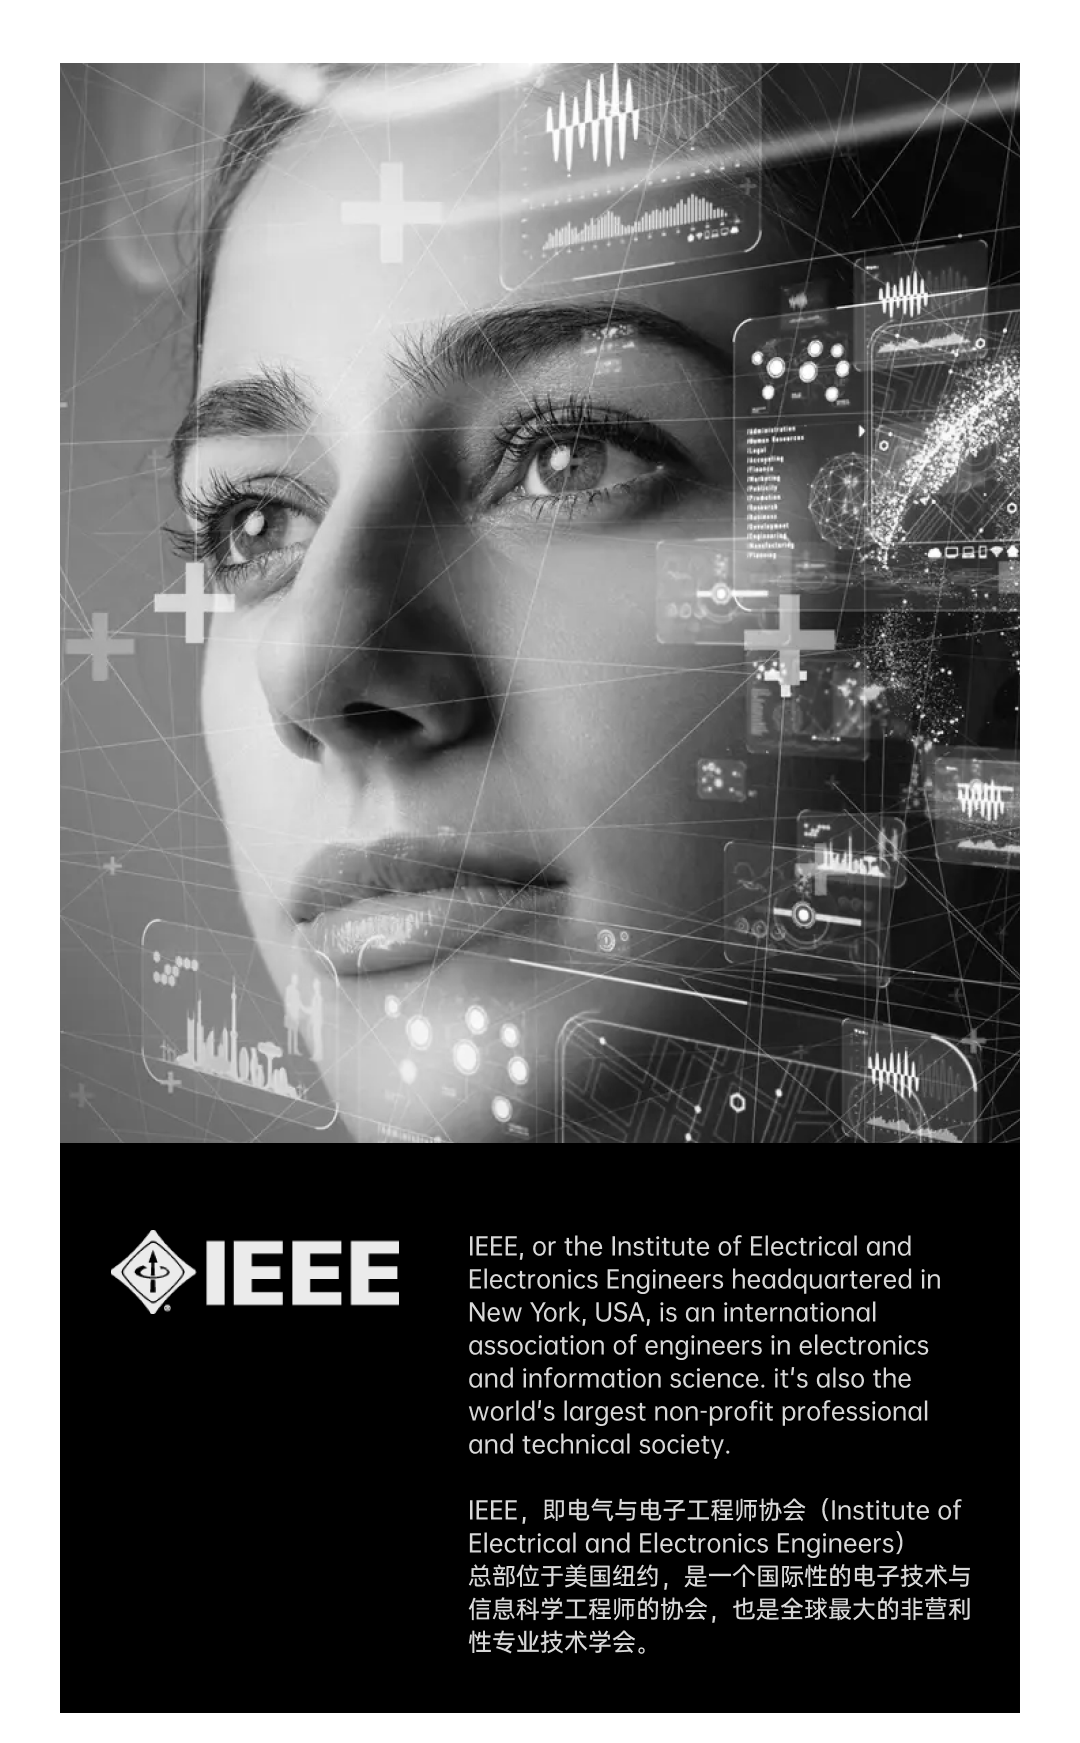 国内物联网唯一参会企业 LifeSmart云起受邀出席IEEE世界物联网大会